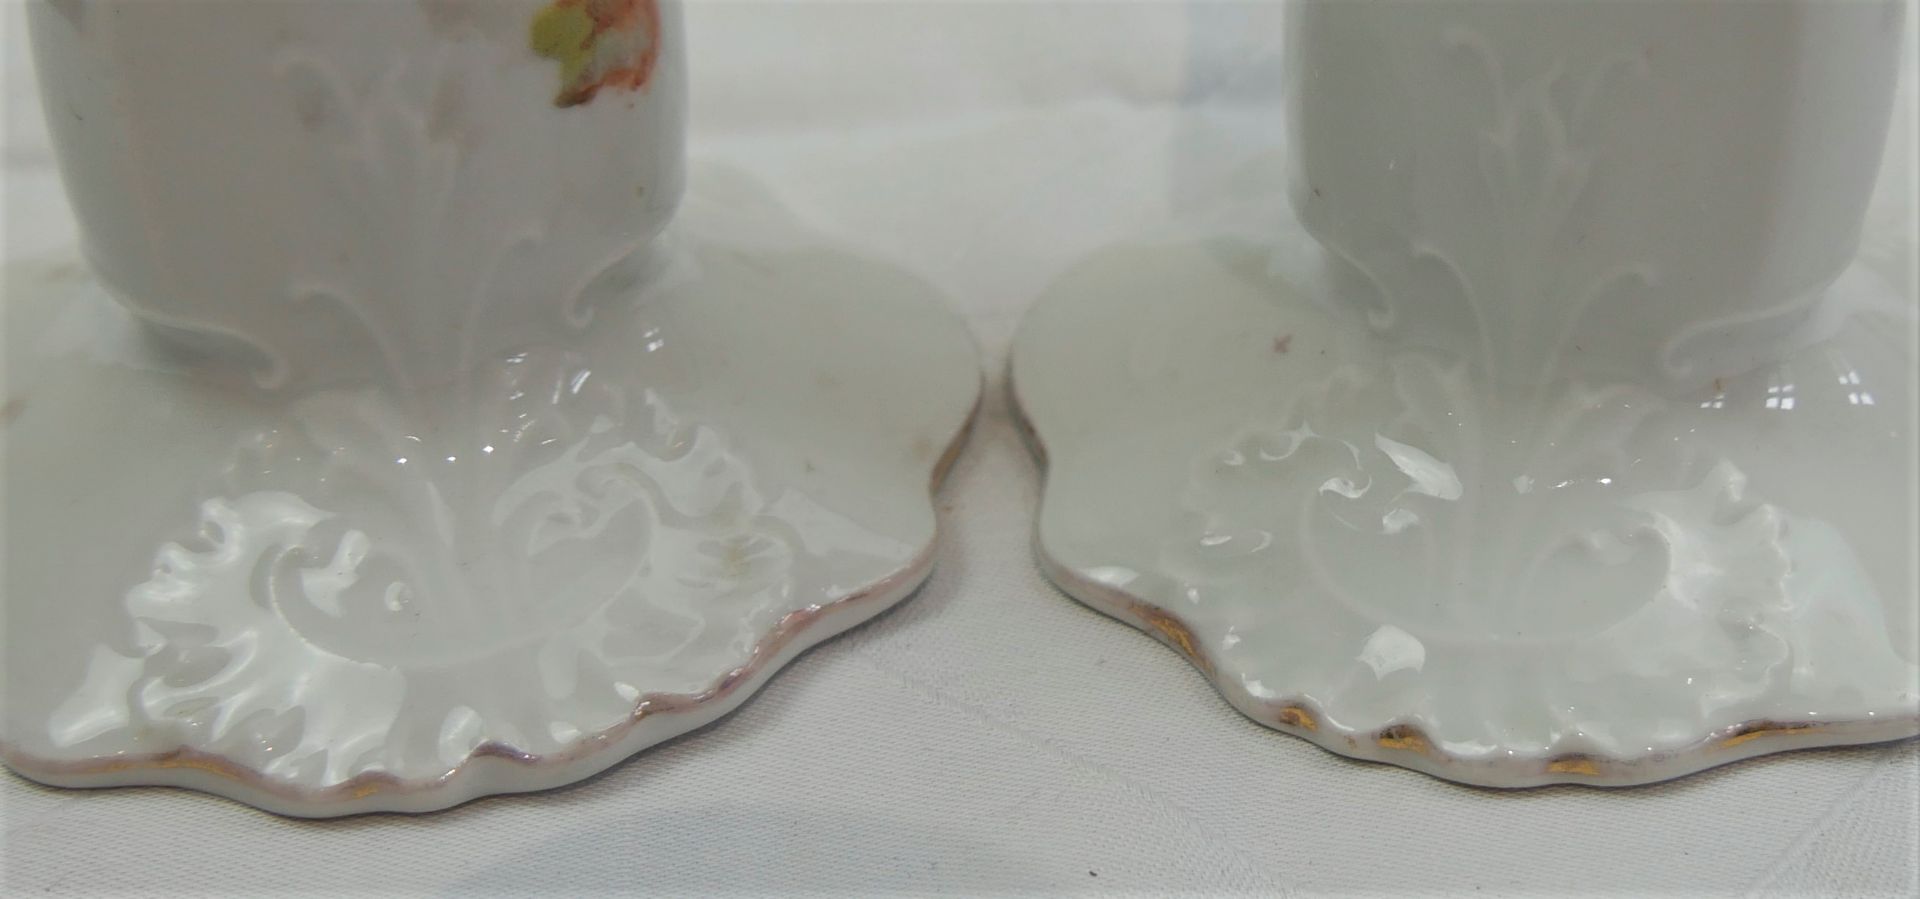 2 ältere Porzellankerzenständer mit Gebrauchsspuren. Höhe ca. 17 cm - Bild 3 aus 3